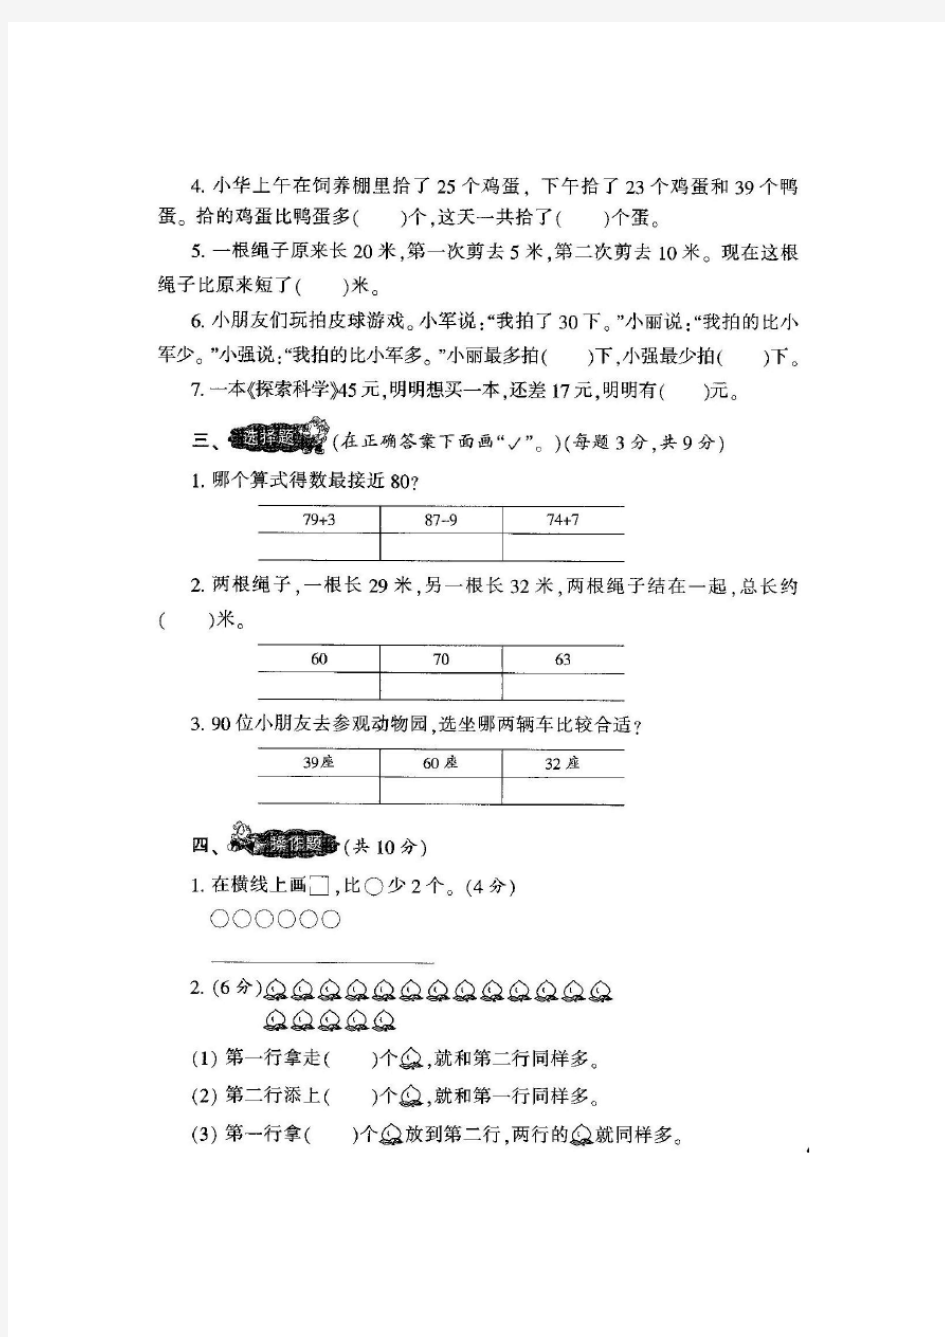 【新】苏教版小学2二年级上册《小学生数学报》学习能力检测试卷(8套)